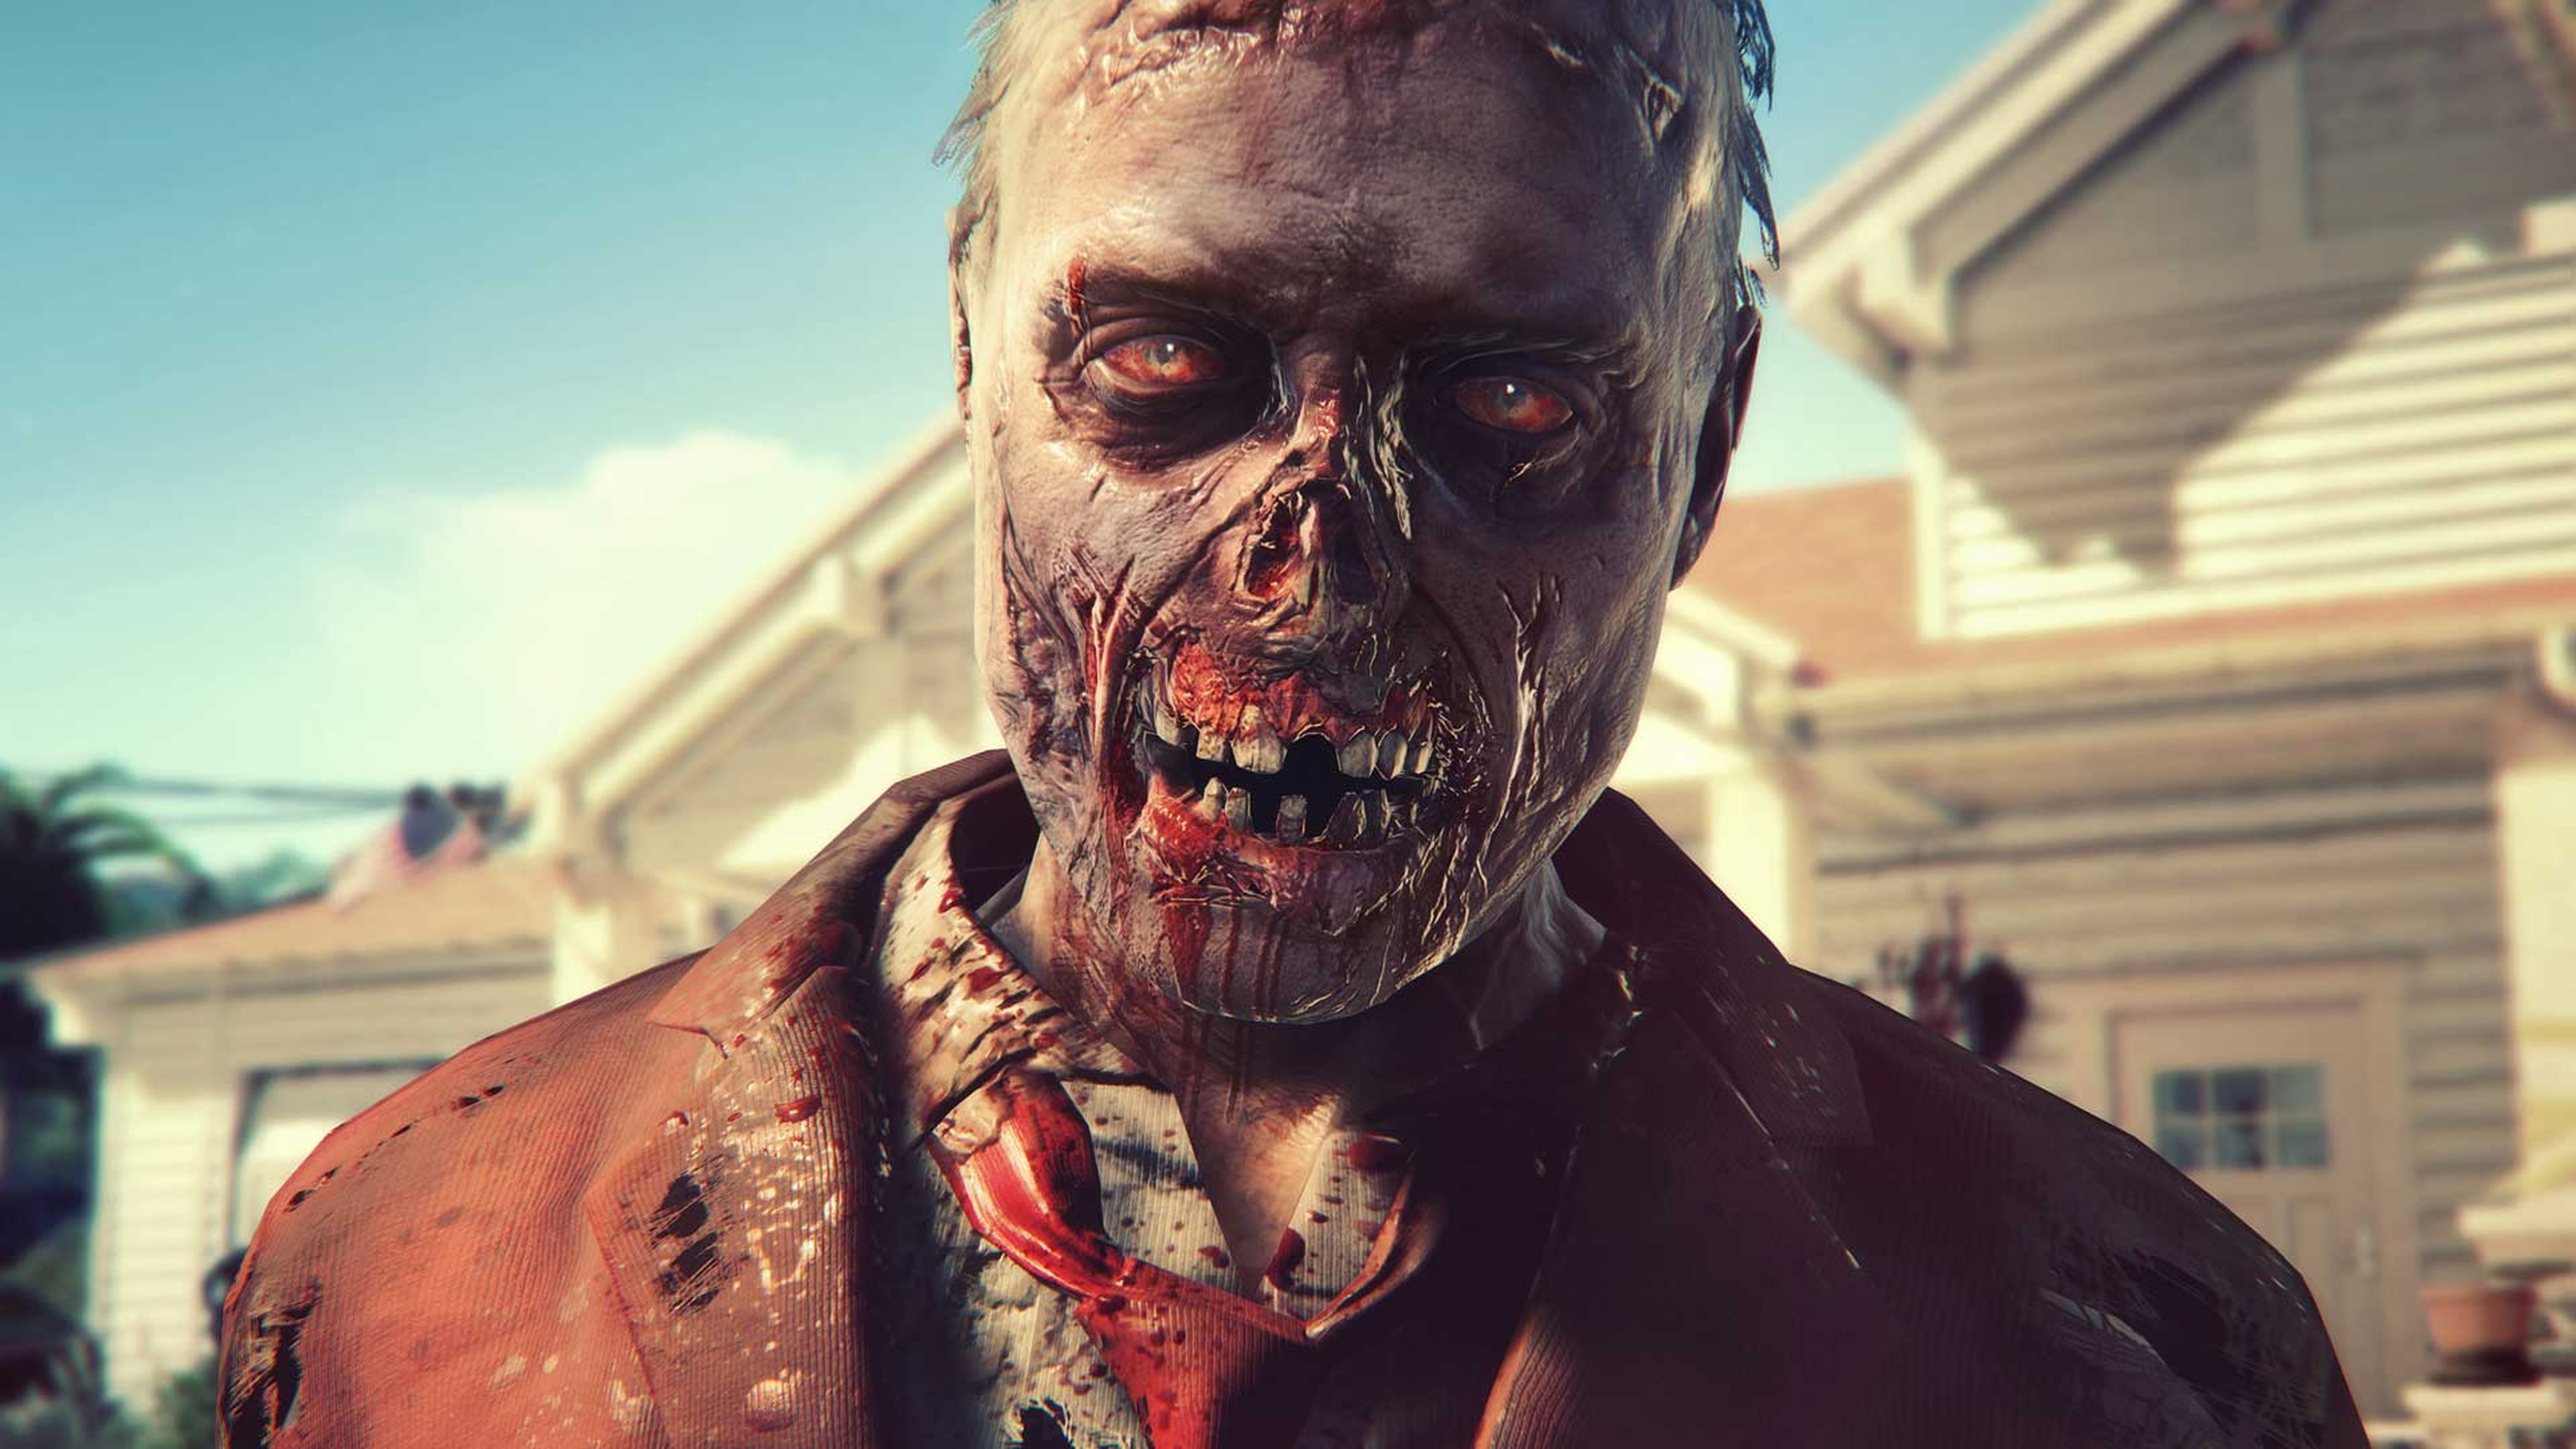 Los 10 juegos de terror para Xbox One más esperados de 2015